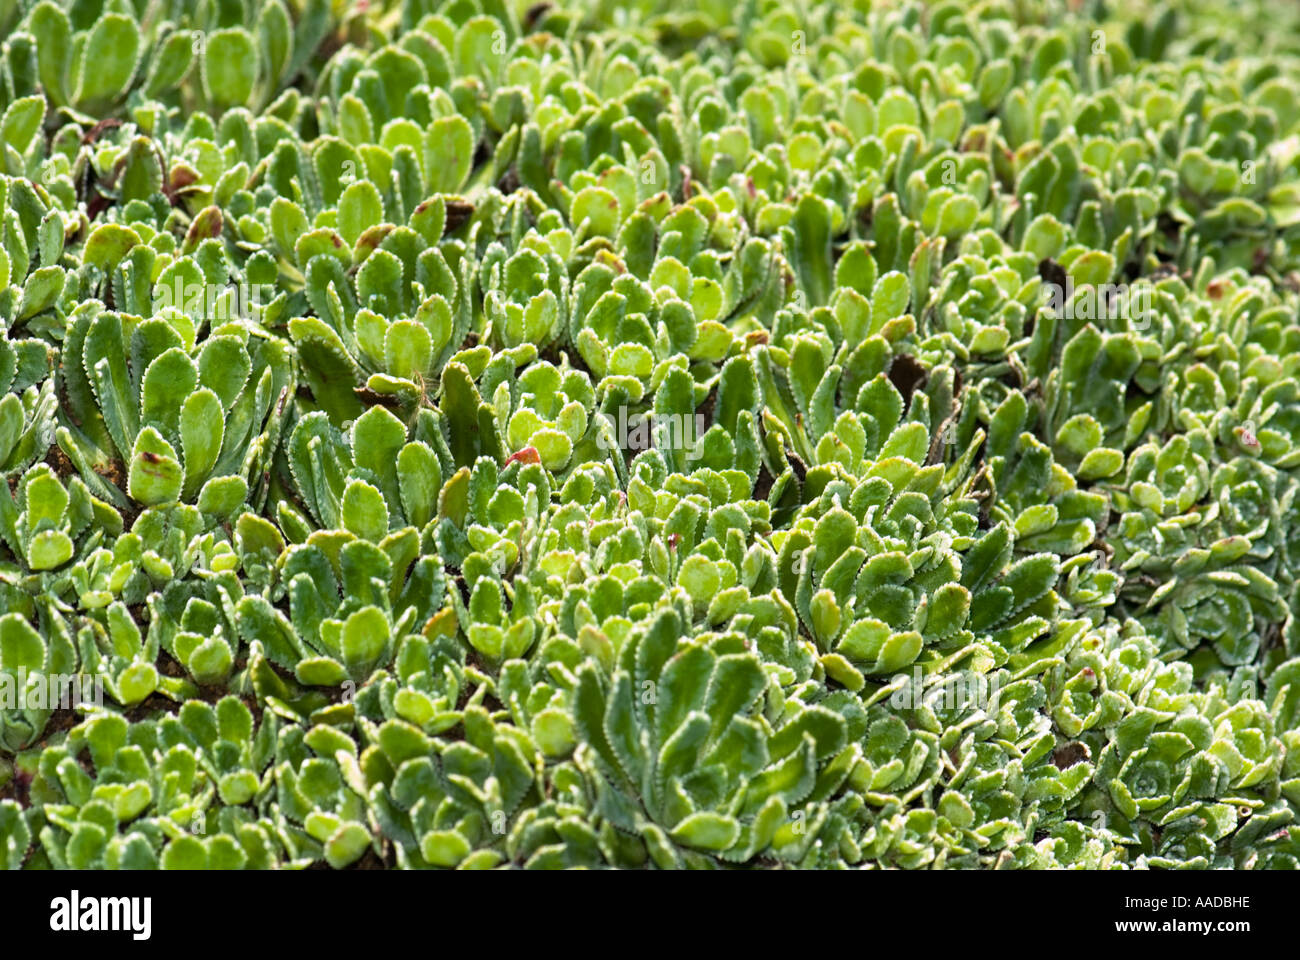 Saxifraga paniculata p. mill SAXIFRAGACEAE trauben steinbrech White Mountain saxifrage Stock Photo